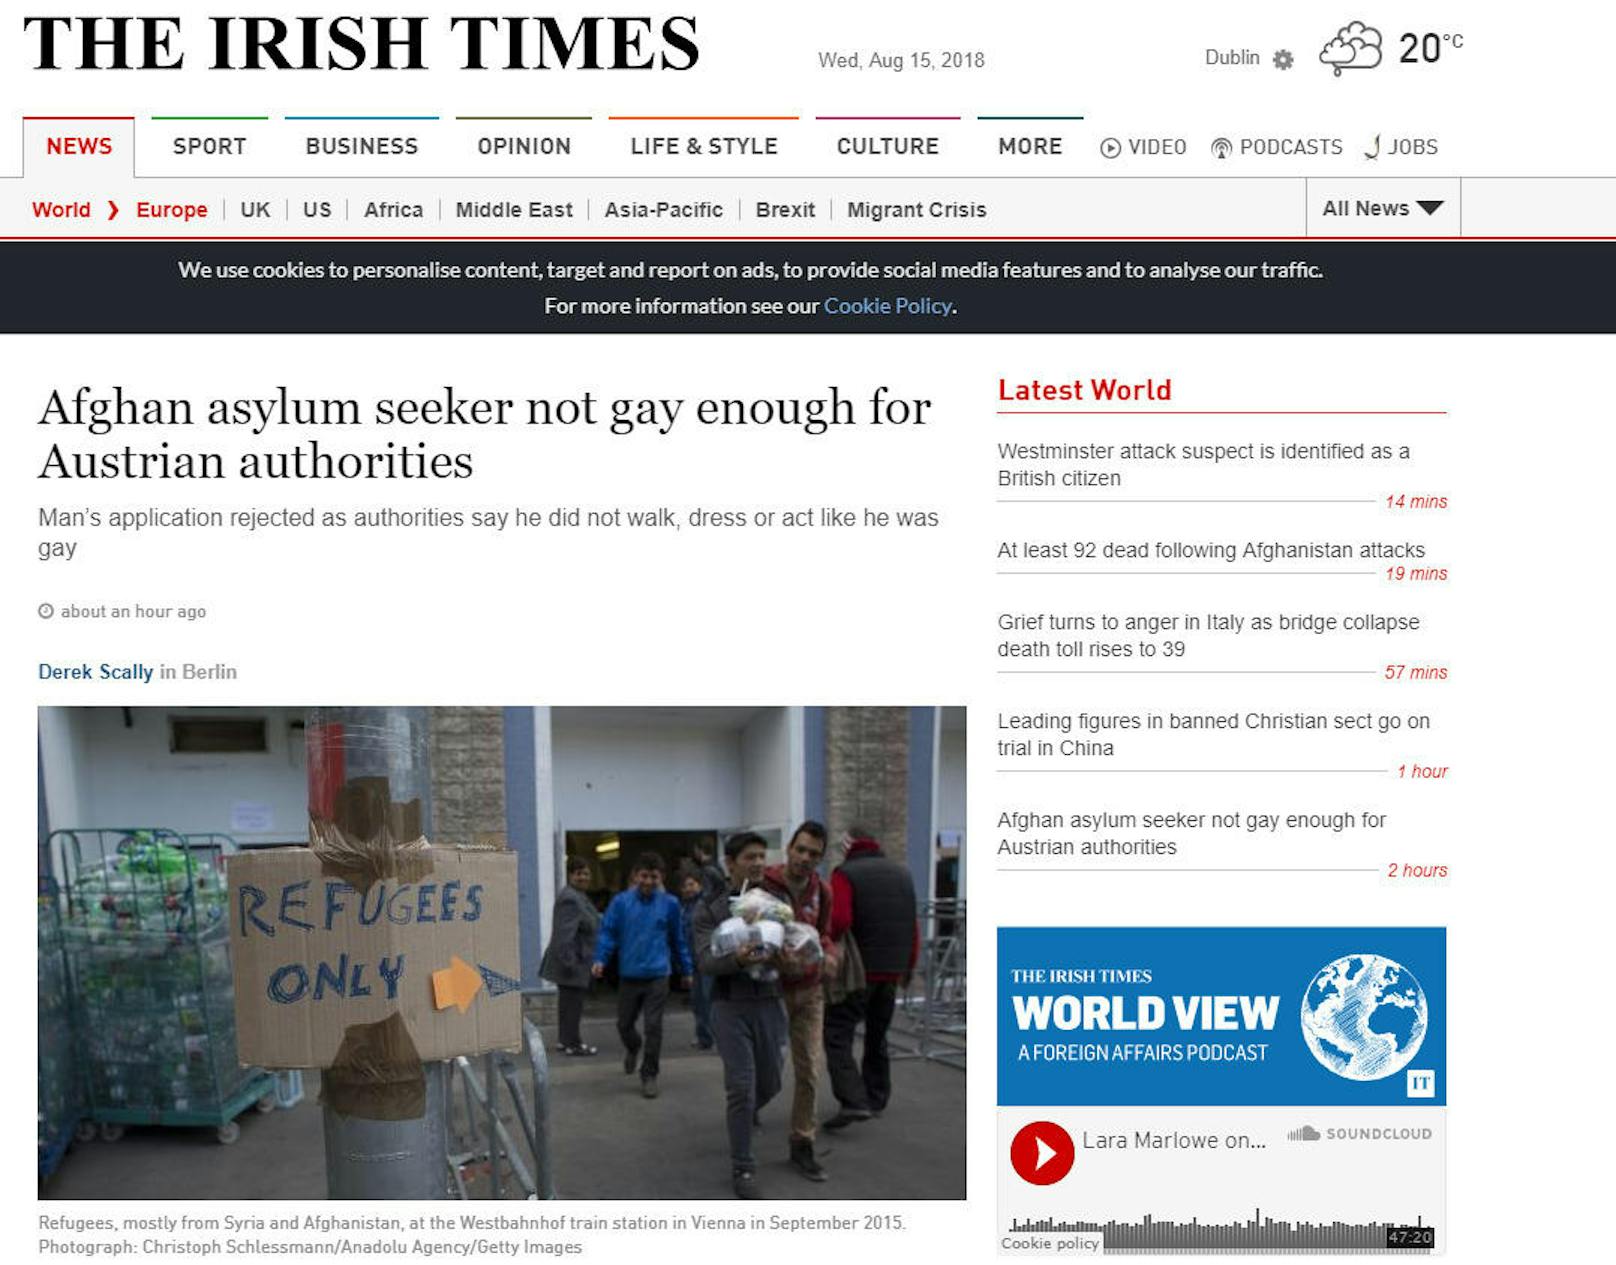 Auch die irische Zeitung "The Irish Times" berichtet: "Afghan asylum seeker not gay enough for Austrian authorities"